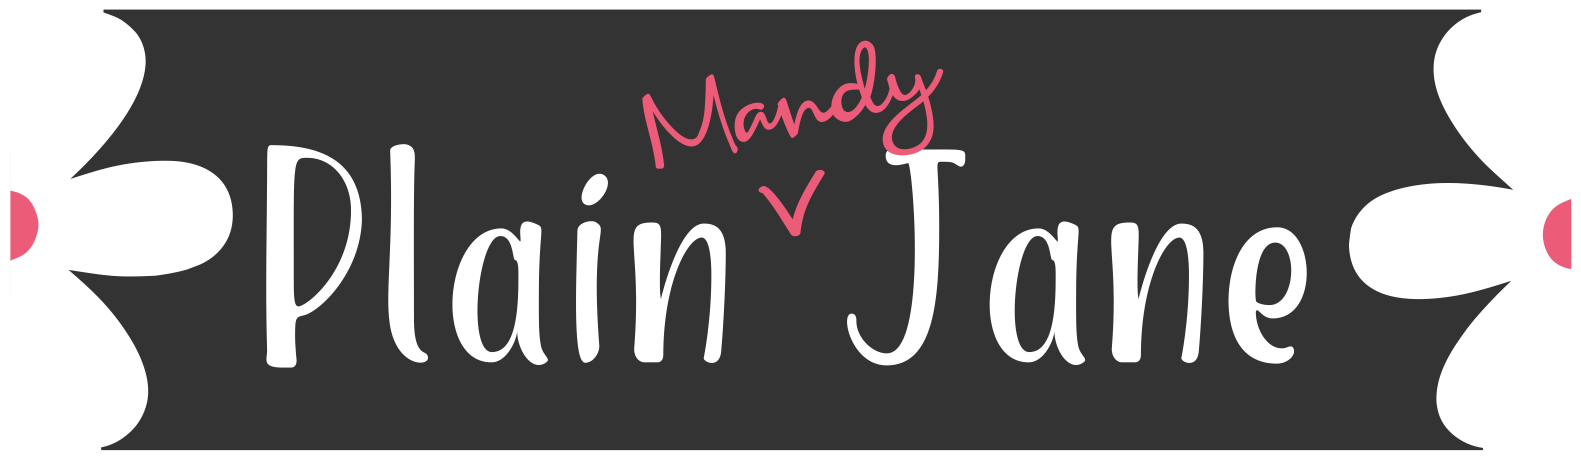 Plain Mandy Jane